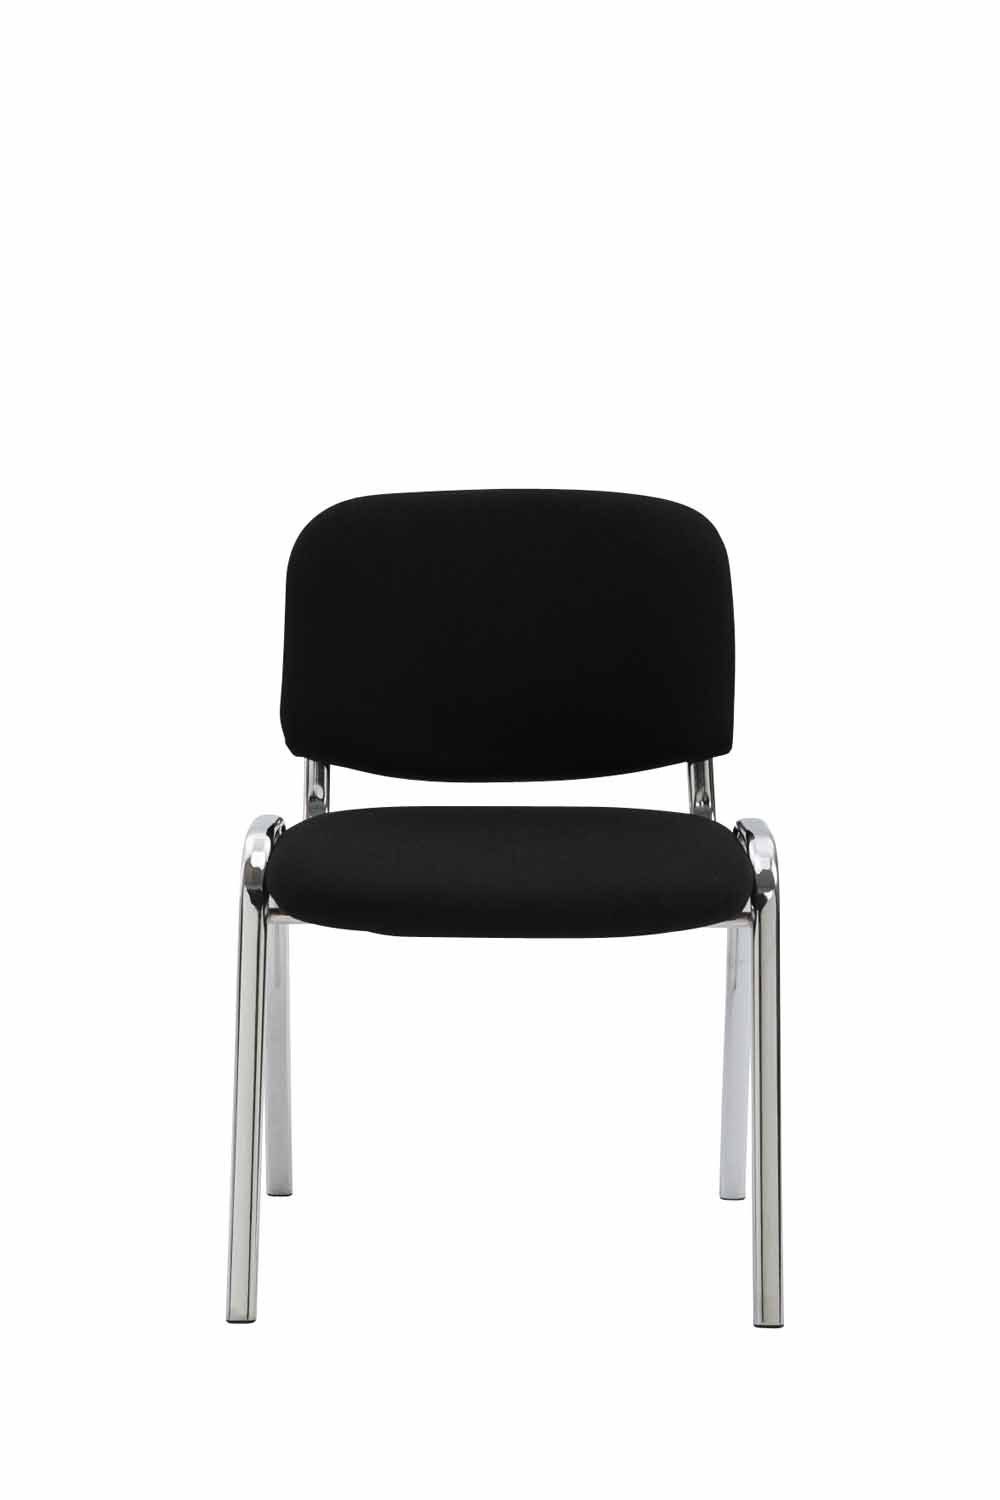 - - schwarz - - Warteraumstuhl (Besprechungsstuhl mit Sitzfläche: TPFLiving hochwertiger Gestell: Besucherstuhl Metall Konferenzstuhl chrom Messestuhl), Keen Polsterung Stoff